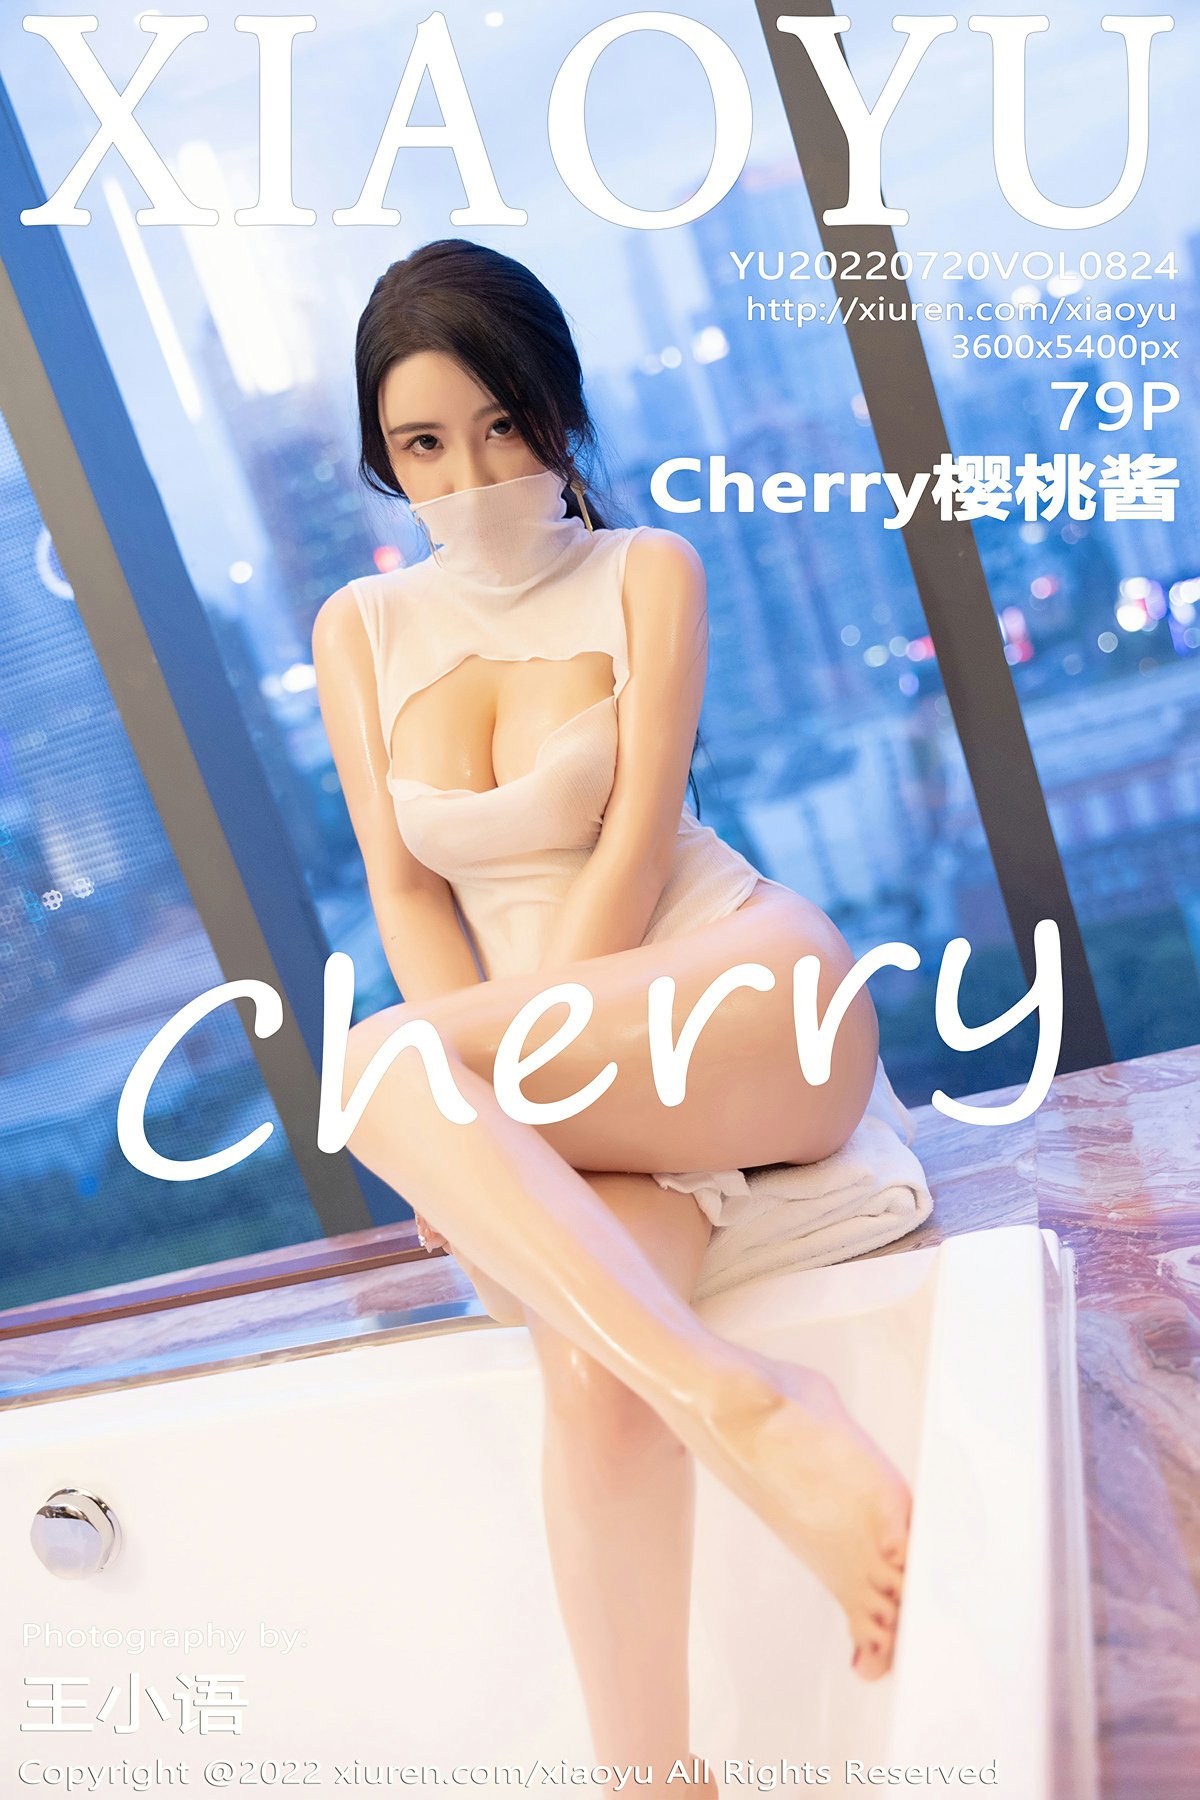 [XIAOYU语画界] VOL.824 Cherry樱桃酱1 